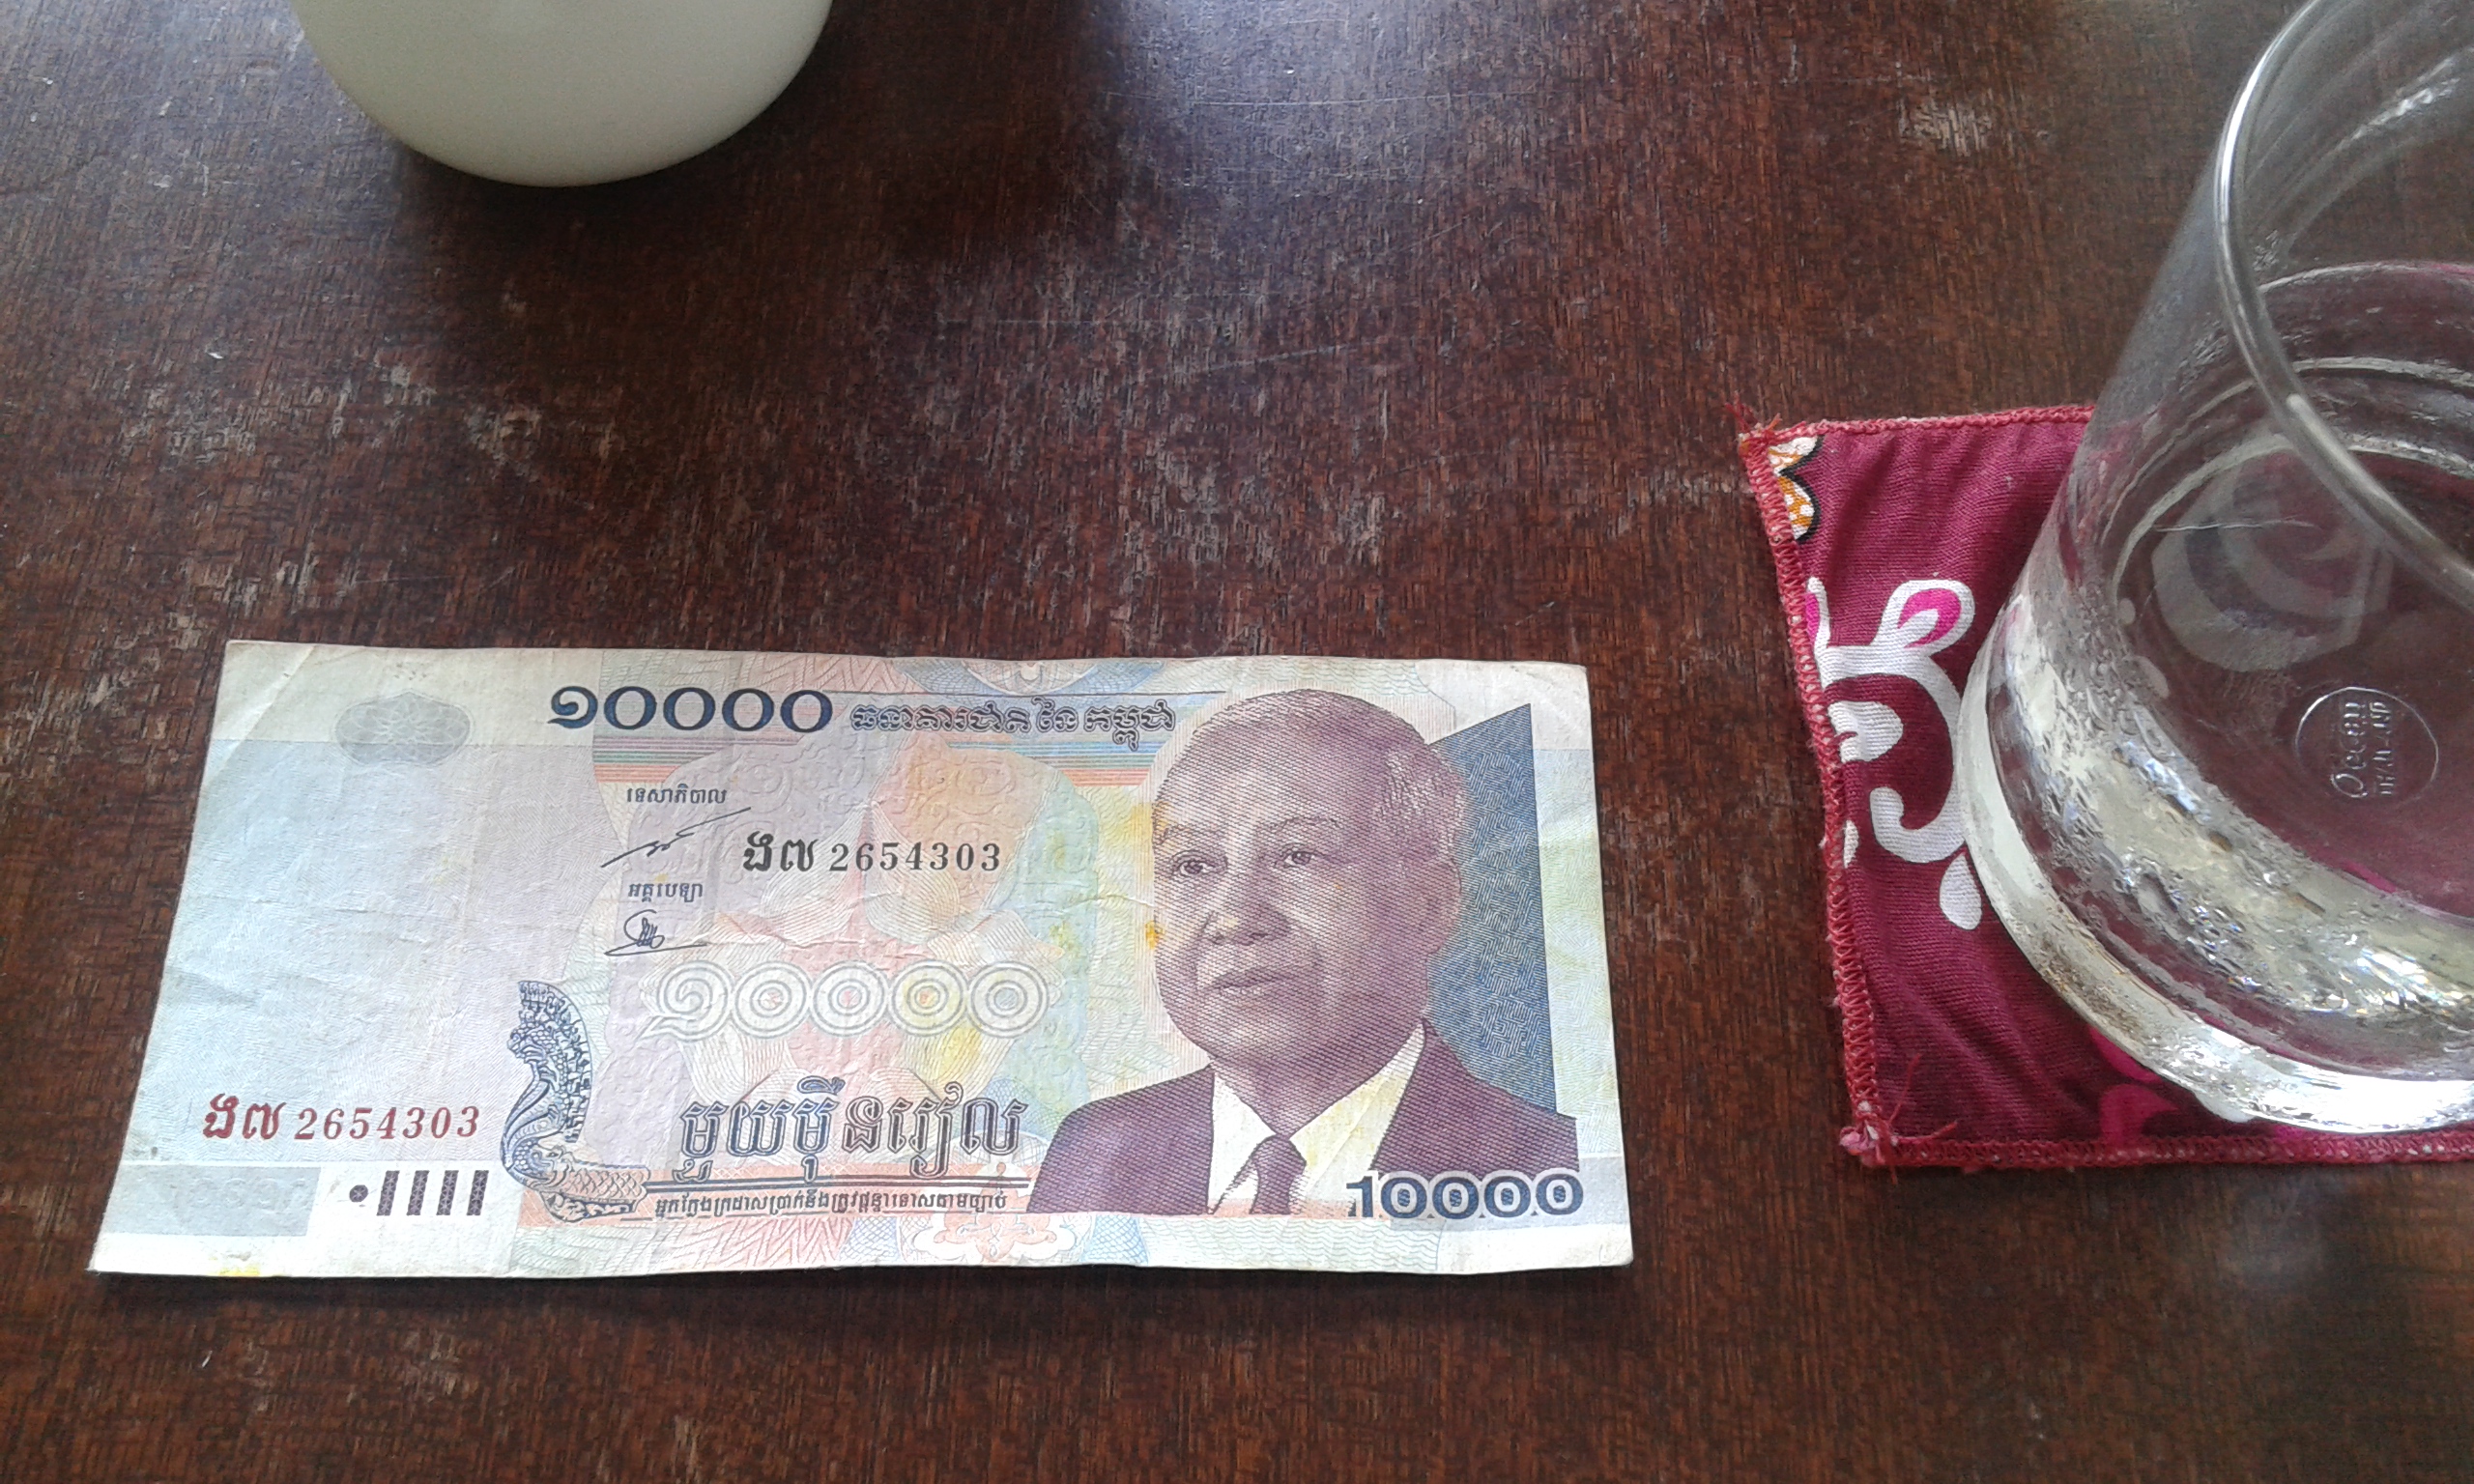 10000 Riels, yang saya dapatkan dari sopir TukTuk.